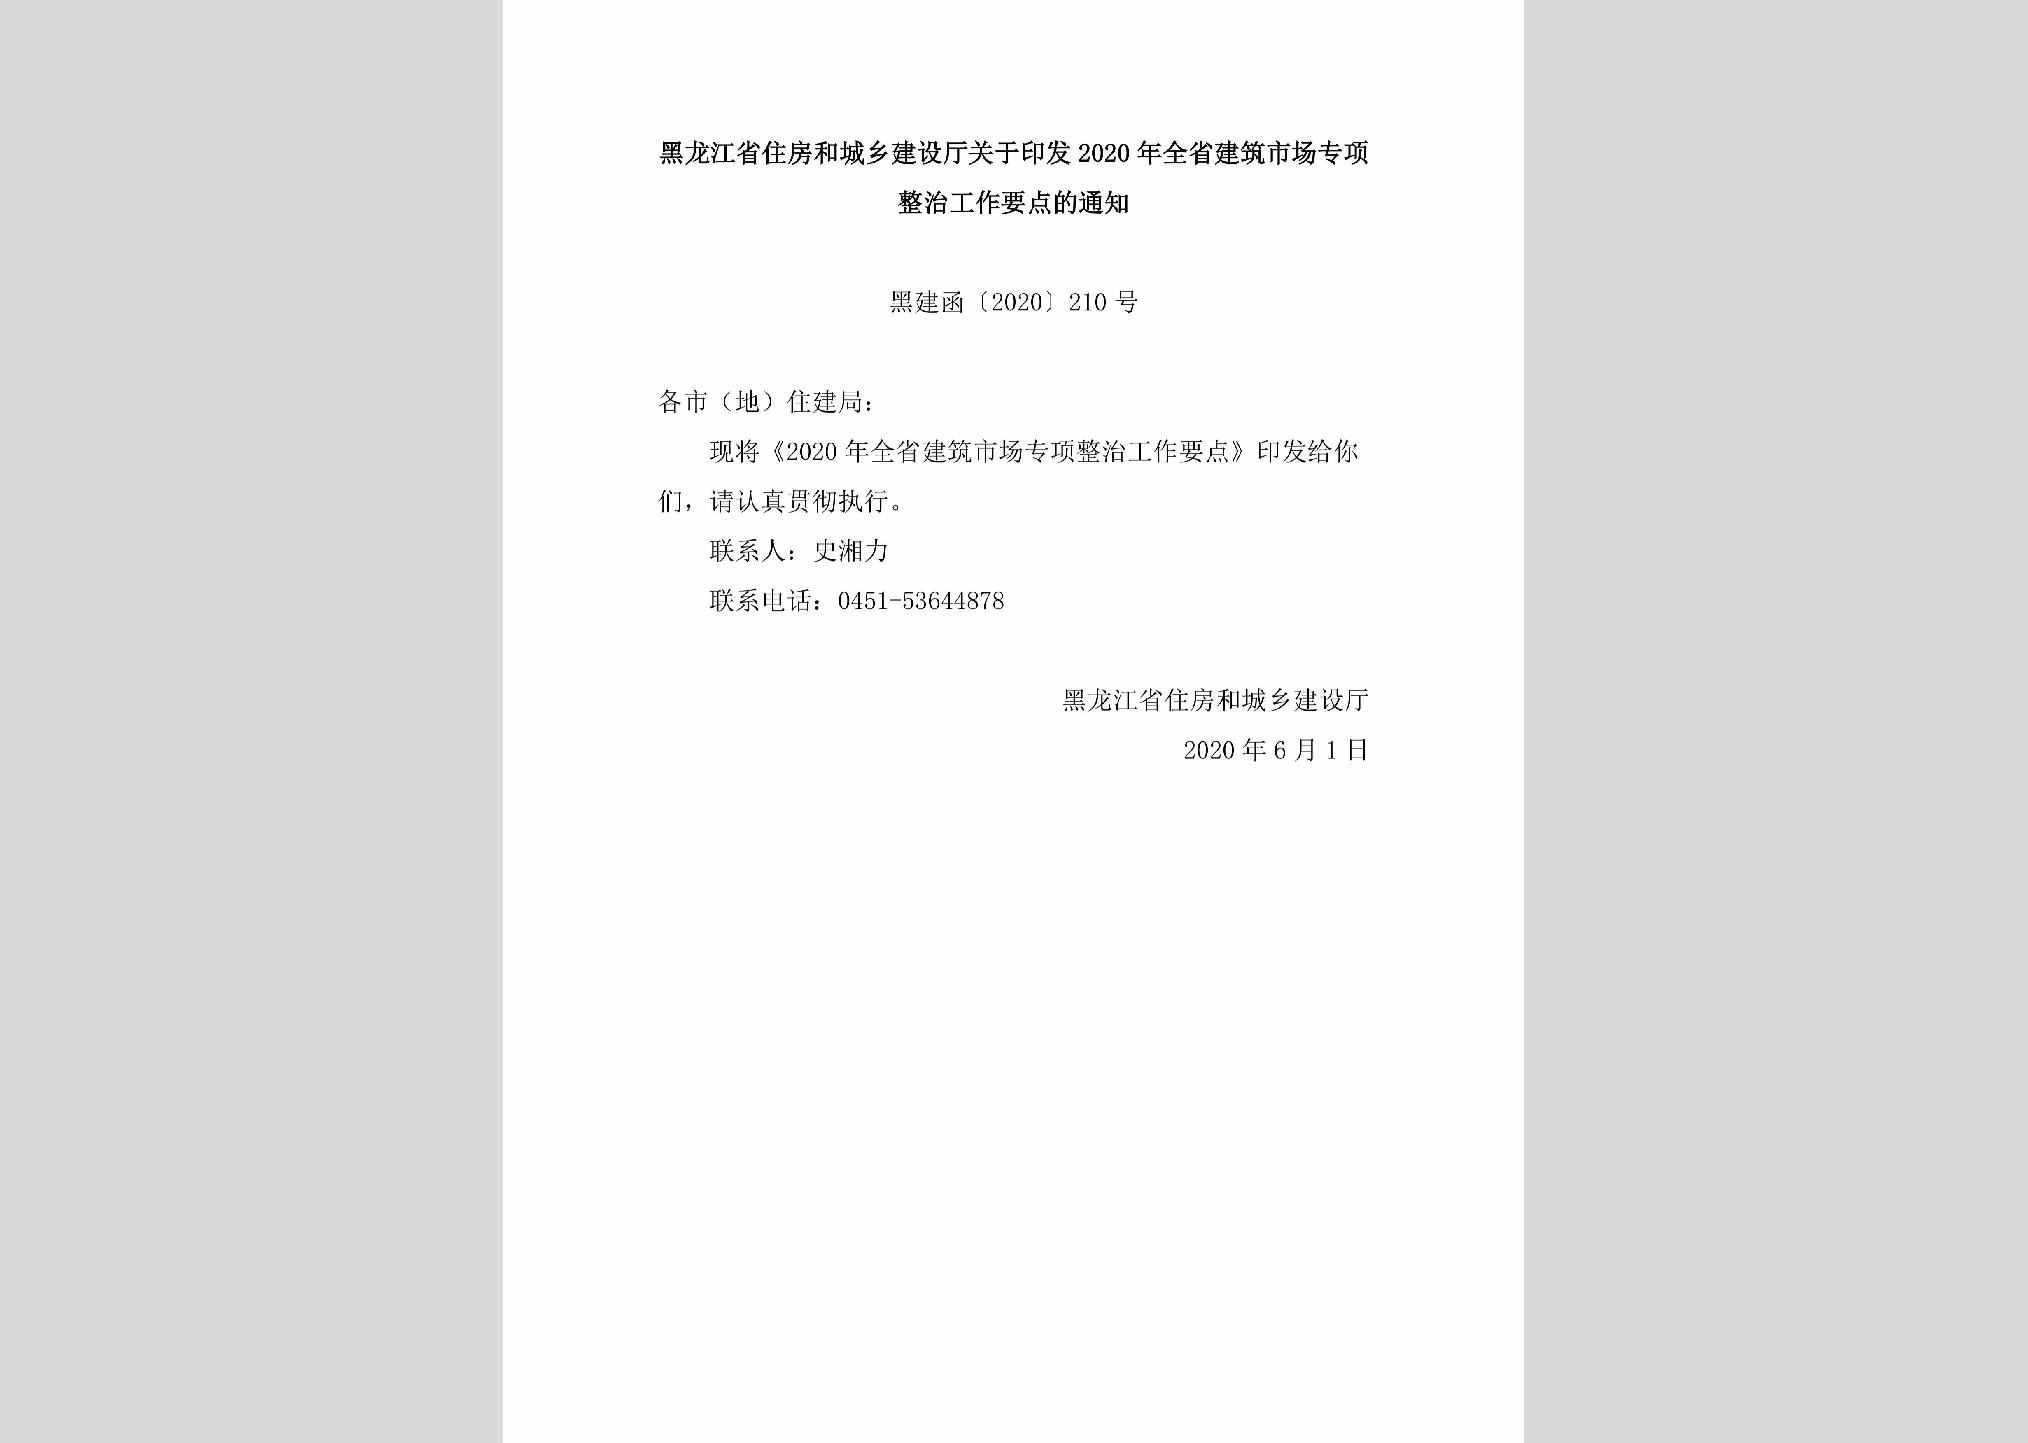 黑建函[2020]210号：黑龙江省住房和城乡建设厅关于印发2020年全省建筑市场专项整治工作要点的通知